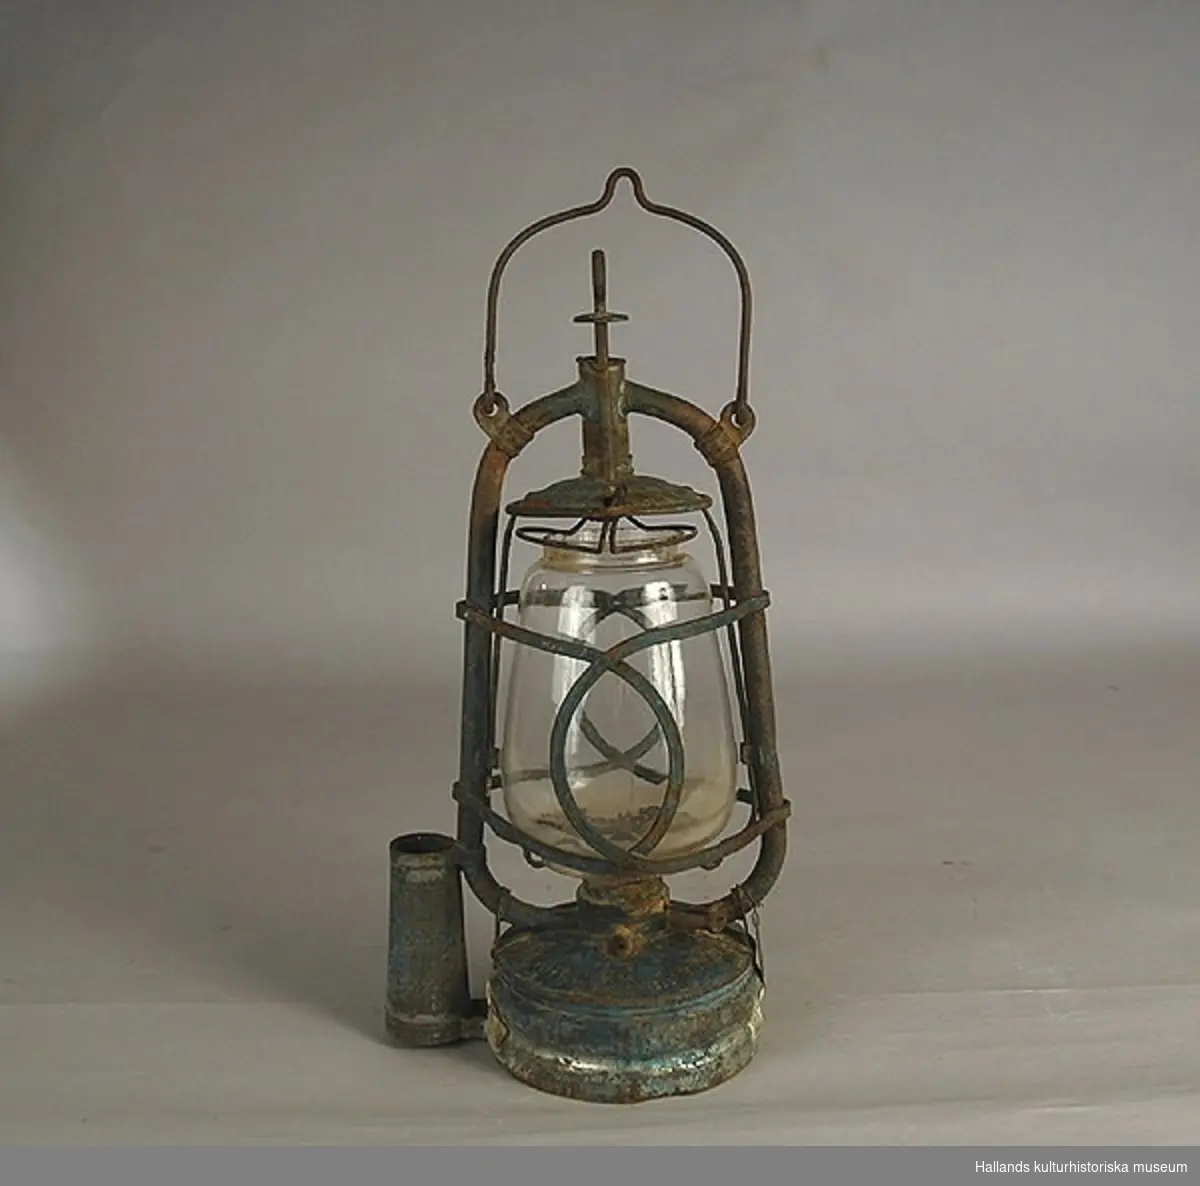 Fotogenlampa (böjlykta) av glas. Hylsan placerad centralt under lyktan. Glas med firmamärke: fladdermus samt O.R.G.M.